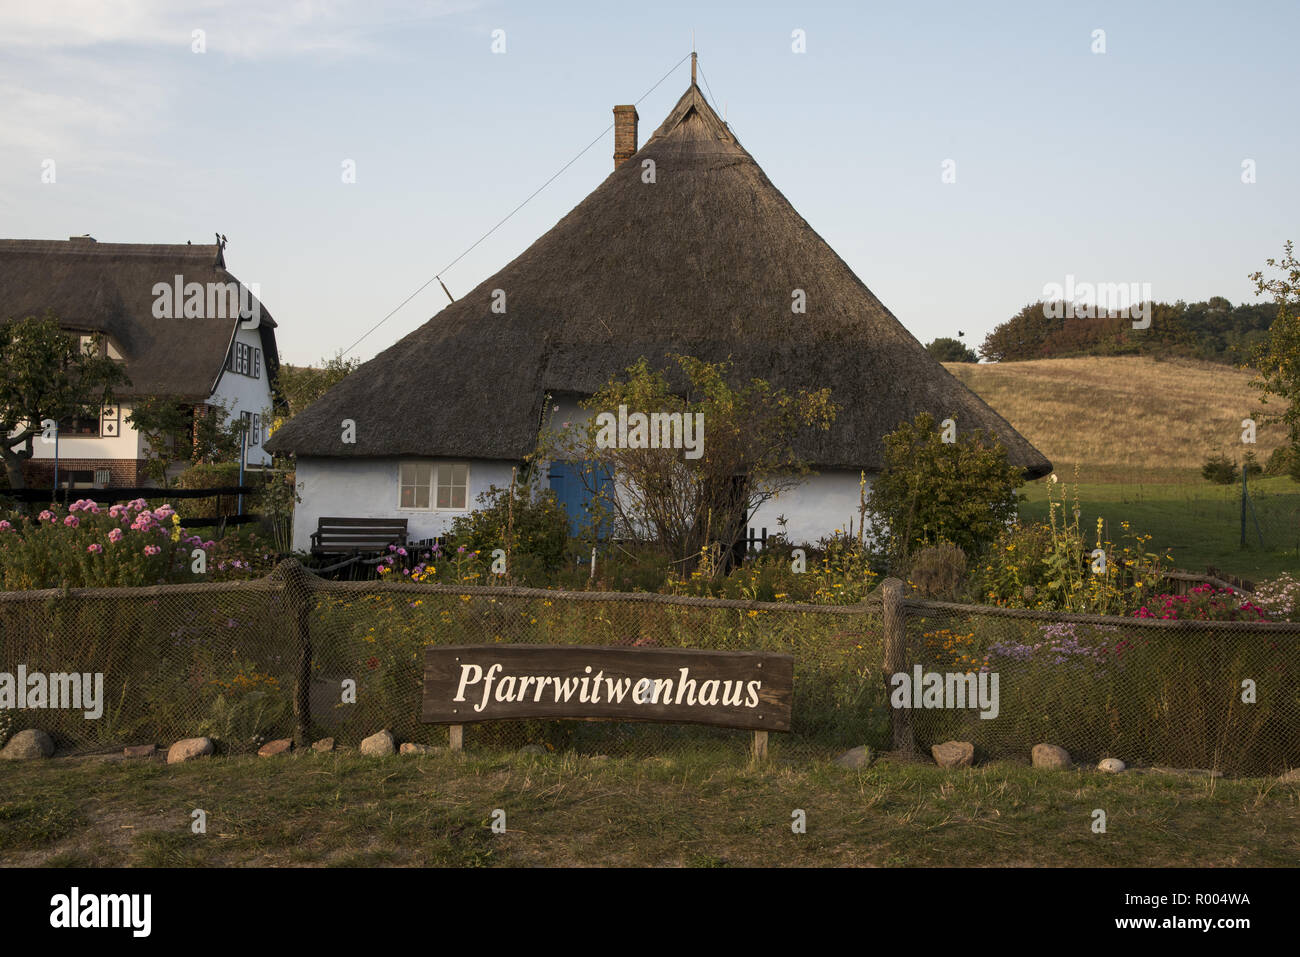 La sterpaglia-roof casa 'Pfarrwitwenhaus' in Groß Zicker nella parte sudorientale di Ruegen isola nel mar Baltico nel nord-est della Germania. Das Pfarrwitwenh Foto Stock